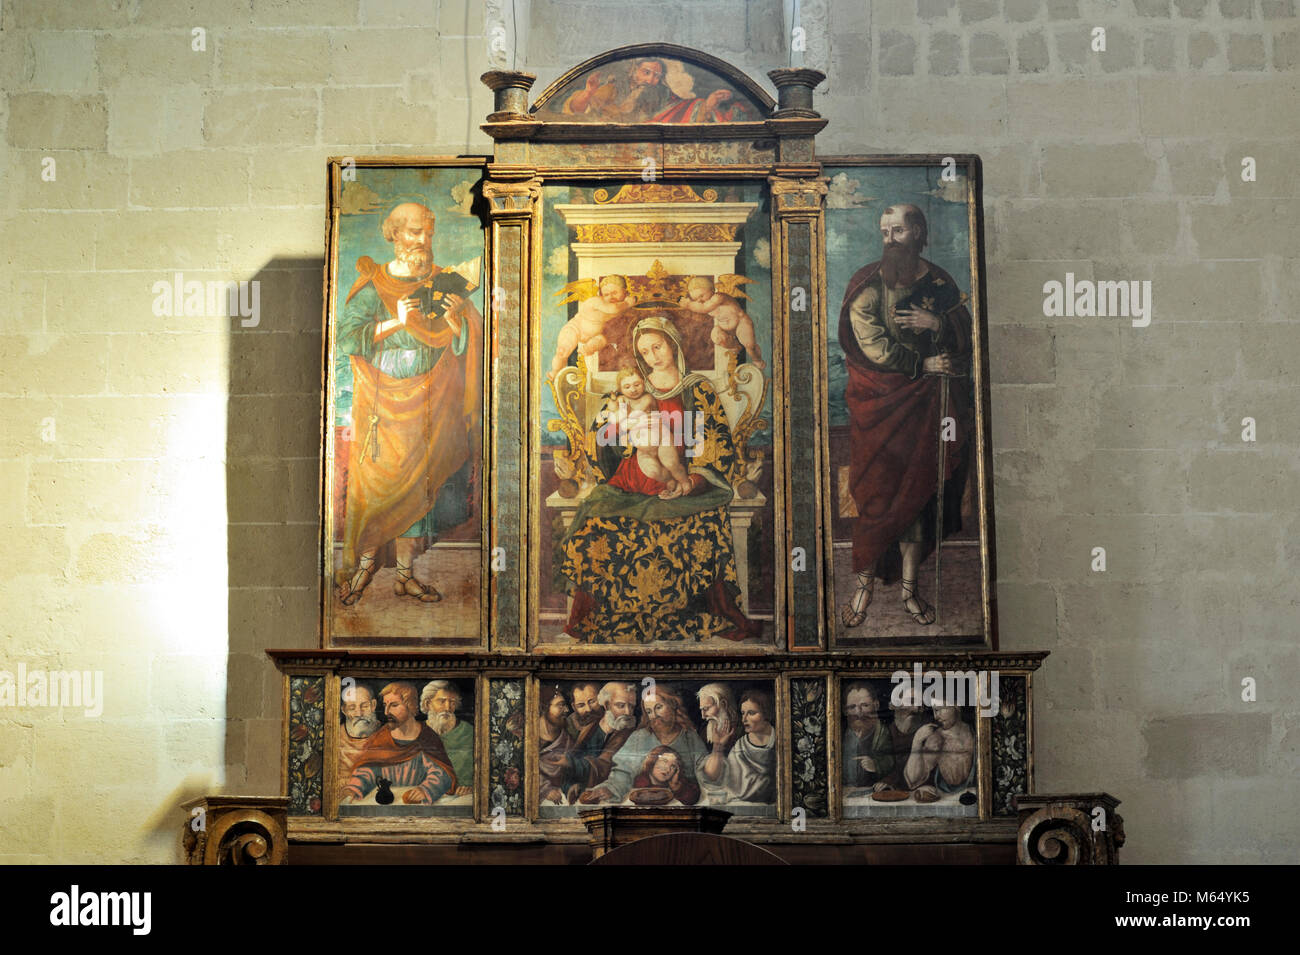 Italie, Basilicate, Matera, église de San Pietro Caveoso, polyptyque sur l'autel (AD 1540), 'Madonna con Bambino tra i santi Pietro e Paolo' Banque D'Images